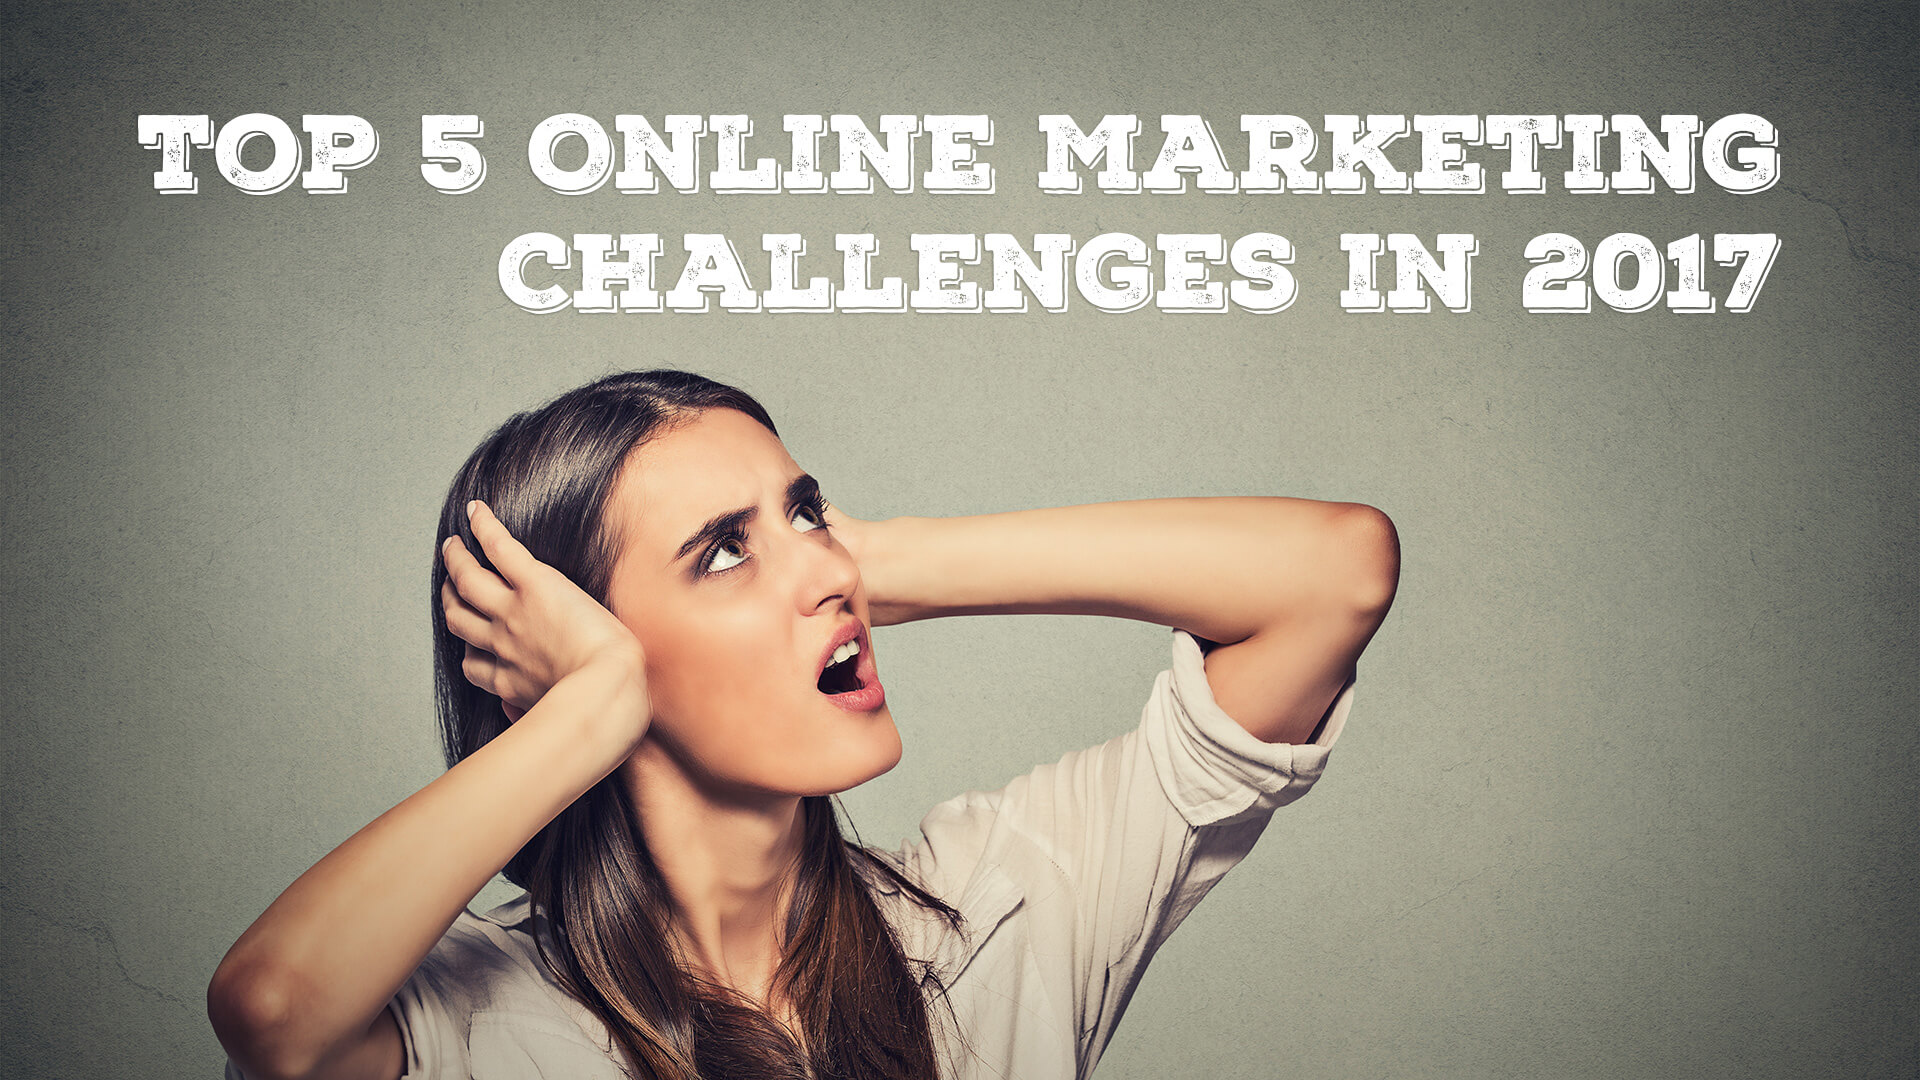 Top 5 Online Marketing Challenges in 2017